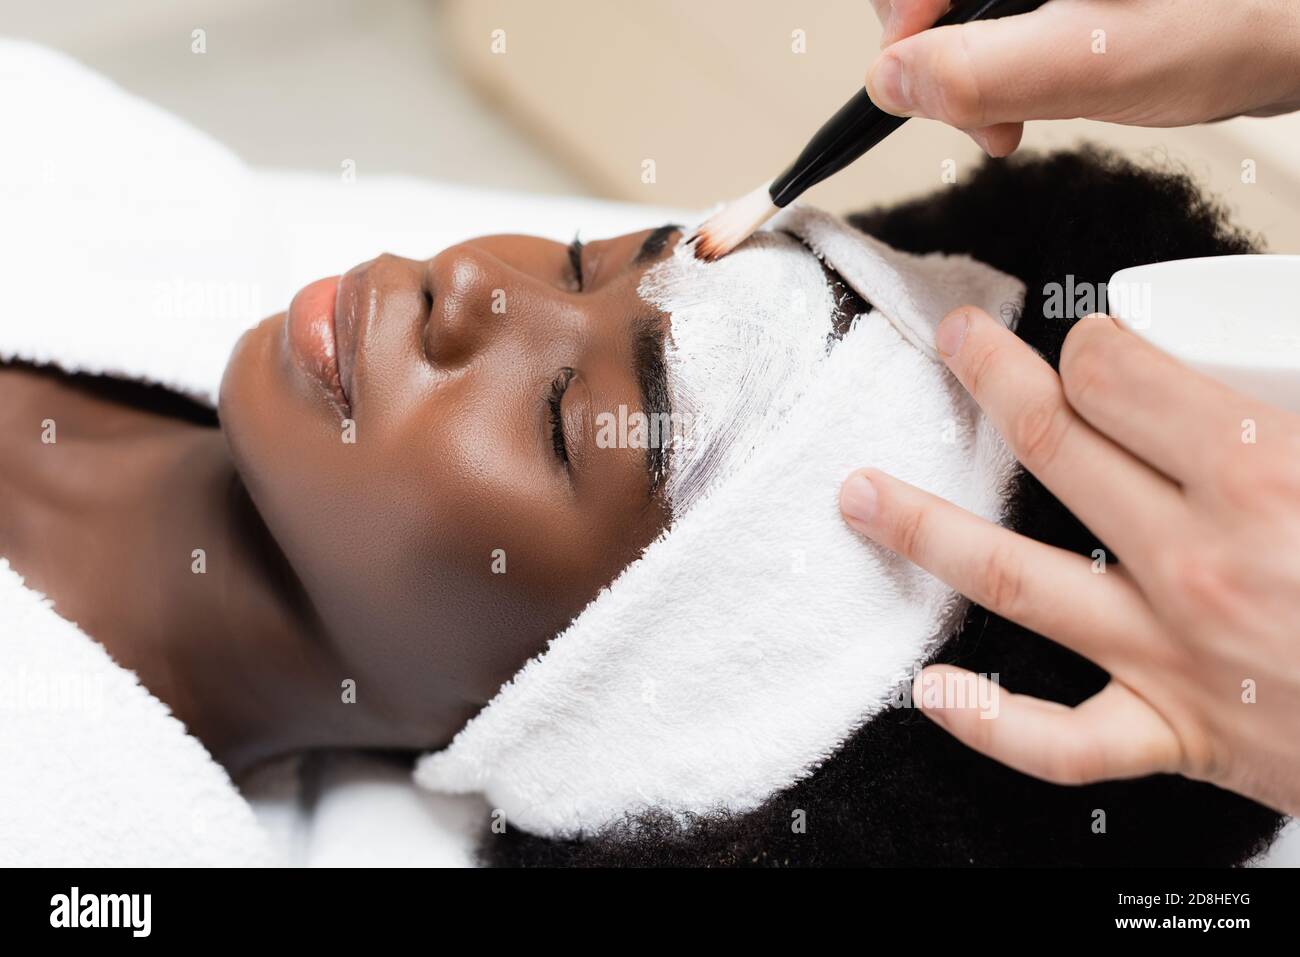 Nahaufnahme des Mannes, der Gesichtsmaske mit Kosmetik anwendet Pinsel auf der Stirn der afroamerikanischen Frau im Spa-Salon Stockfoto